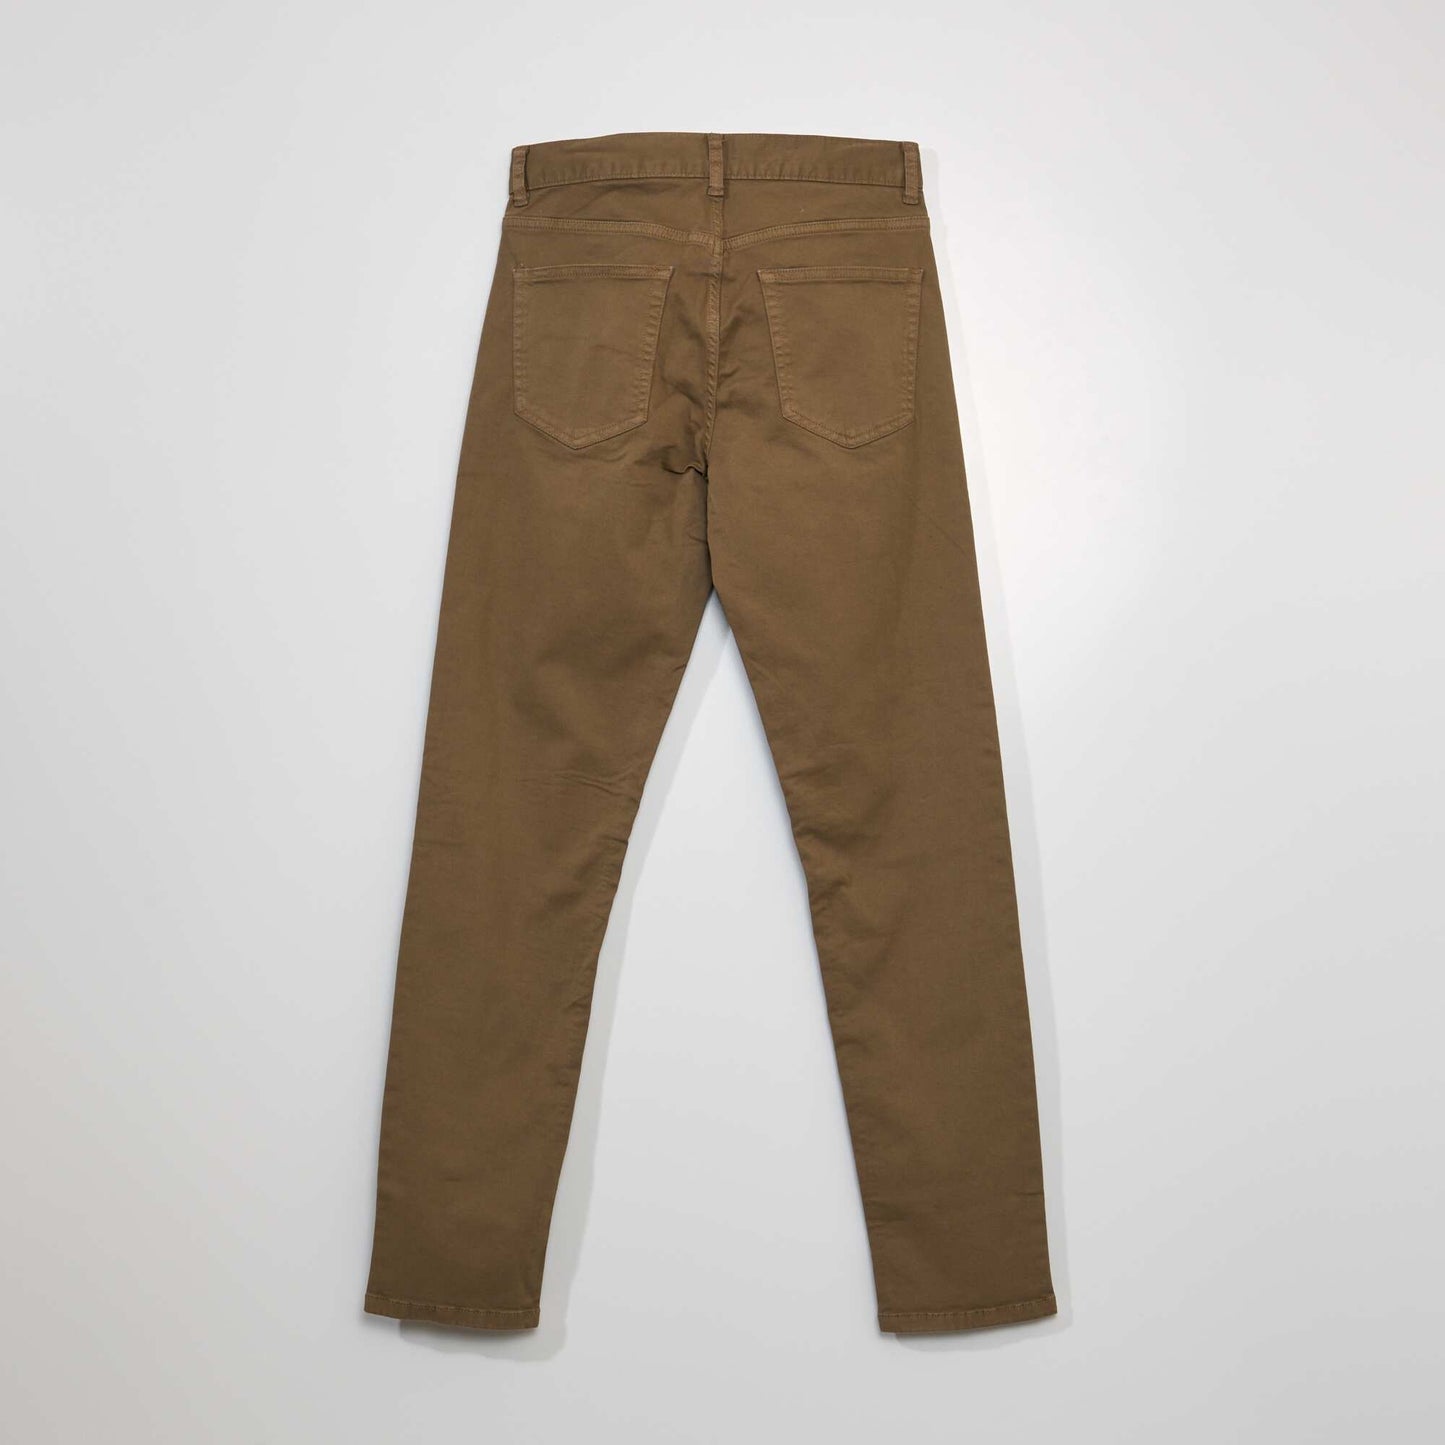 Pantalon slim 5 poches - L32 marron